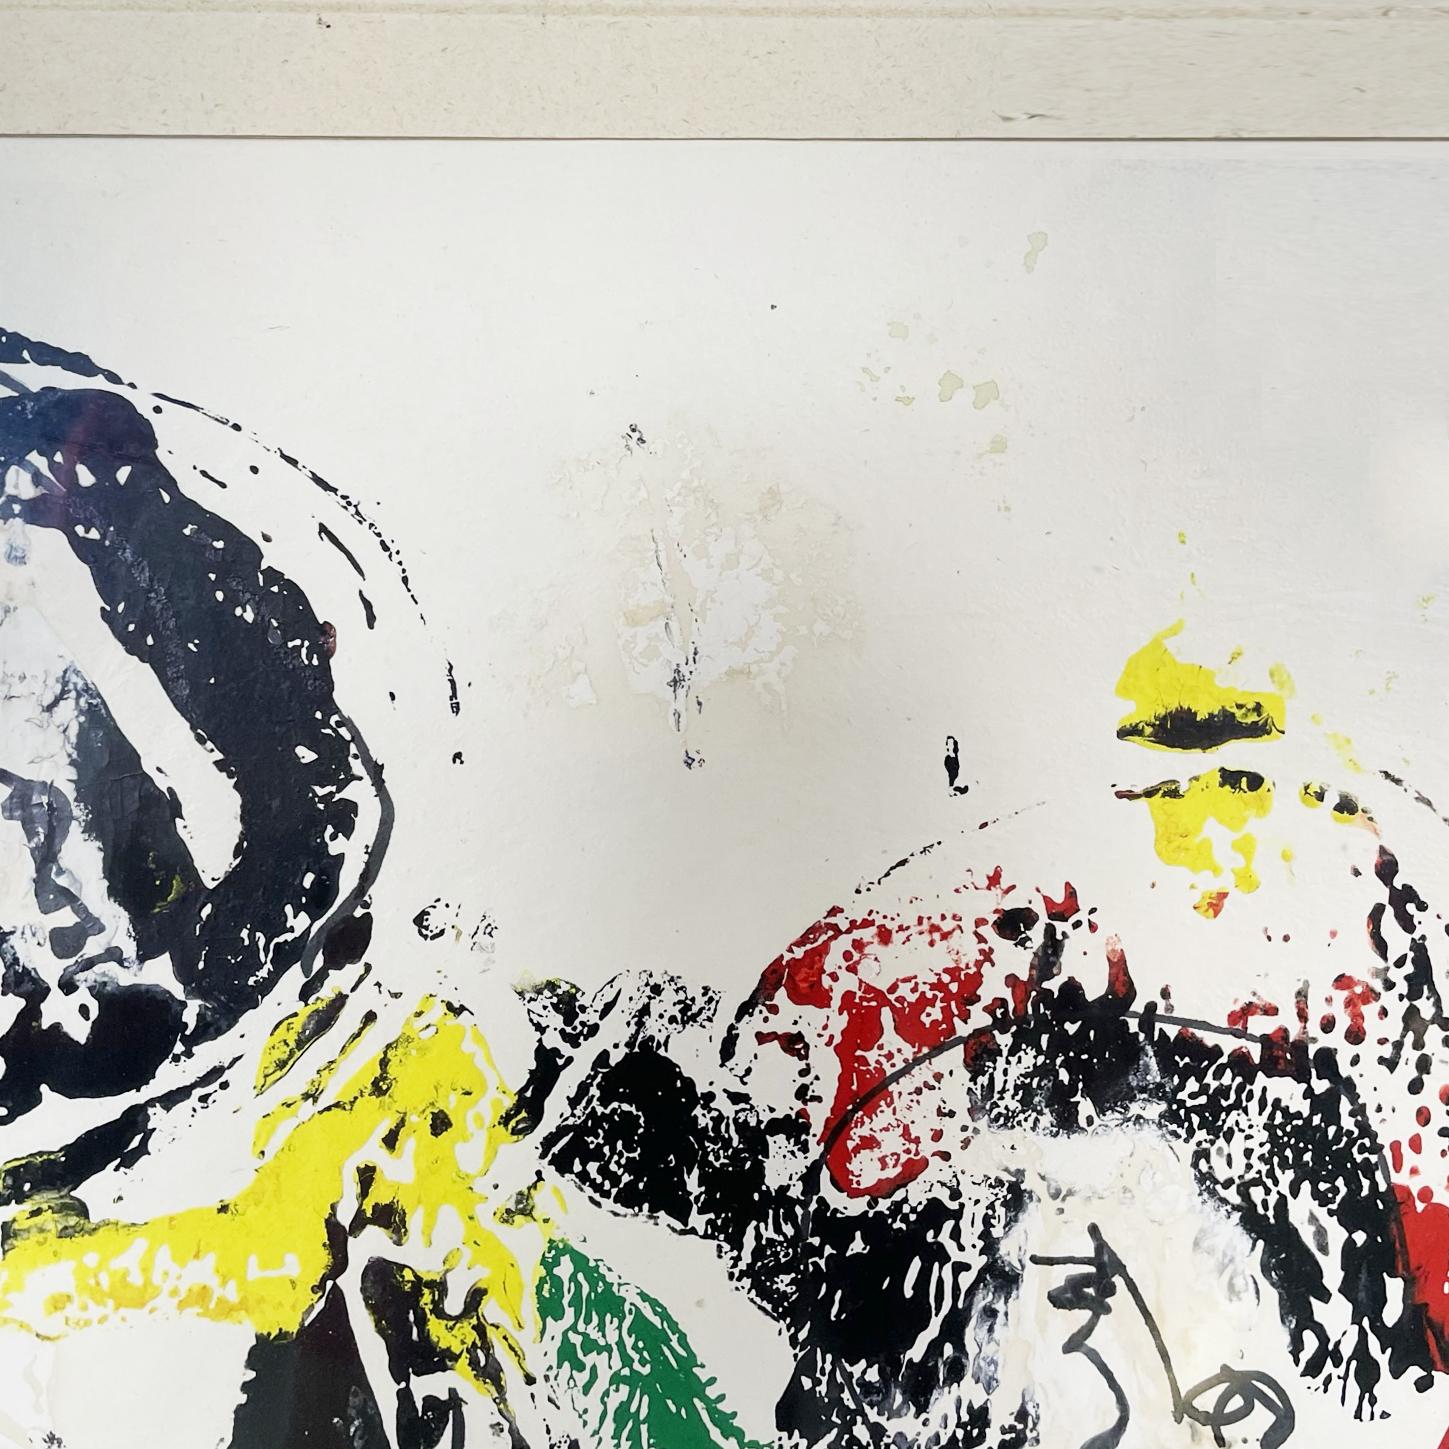 Italienische Moderne Abstrakte Mischtechnik auf Papier und Metallrahmen, 1972
Abstraktes Gemälde im Mischtechnik-Stil auf Papier. Die gestische Malerei ist durch runde Linien und die Farben Schwarz, Rot, Gelb und Weiß gekennzeichnet. In